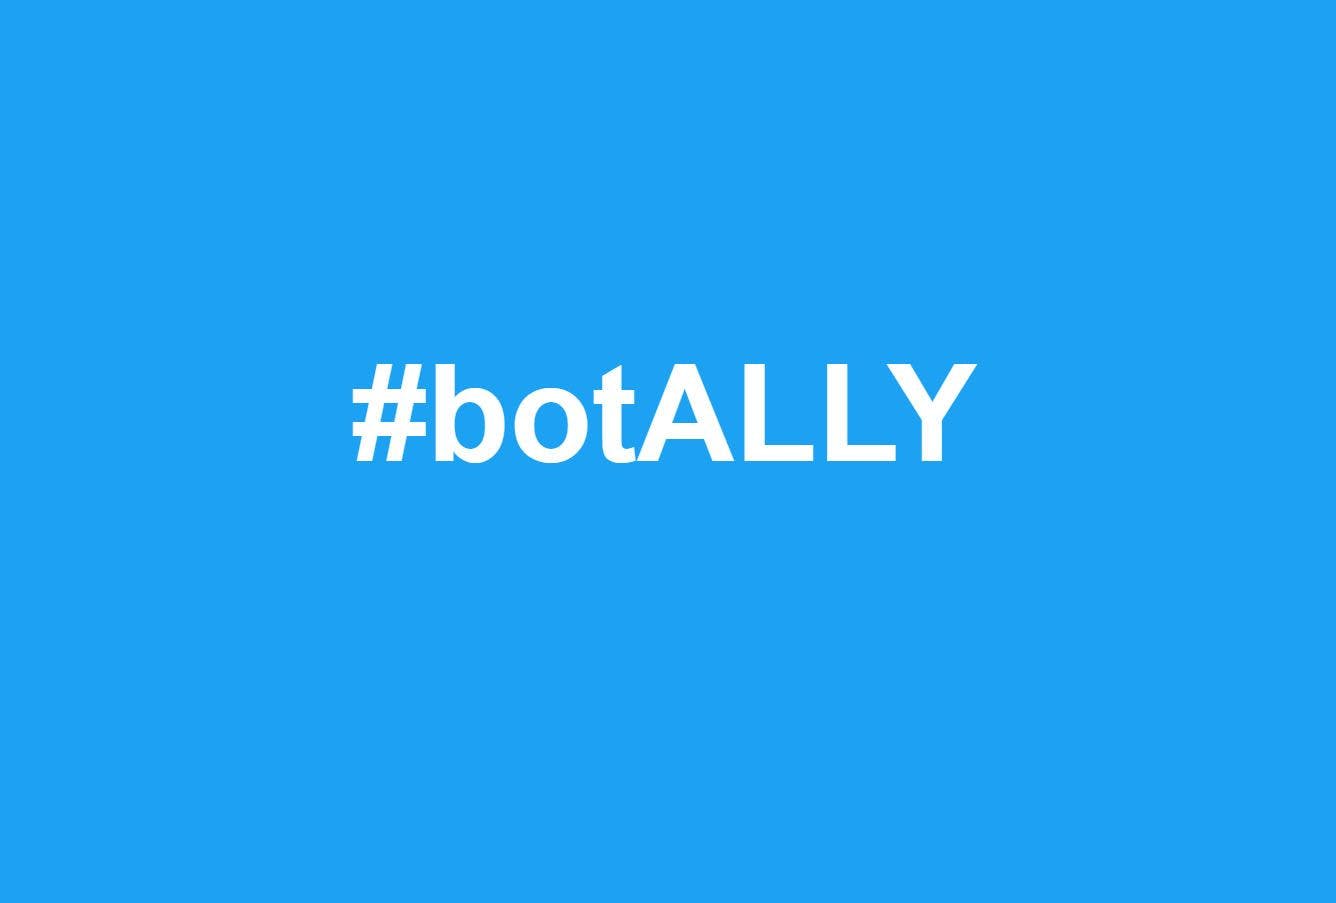  BotAlly, Hashtag 